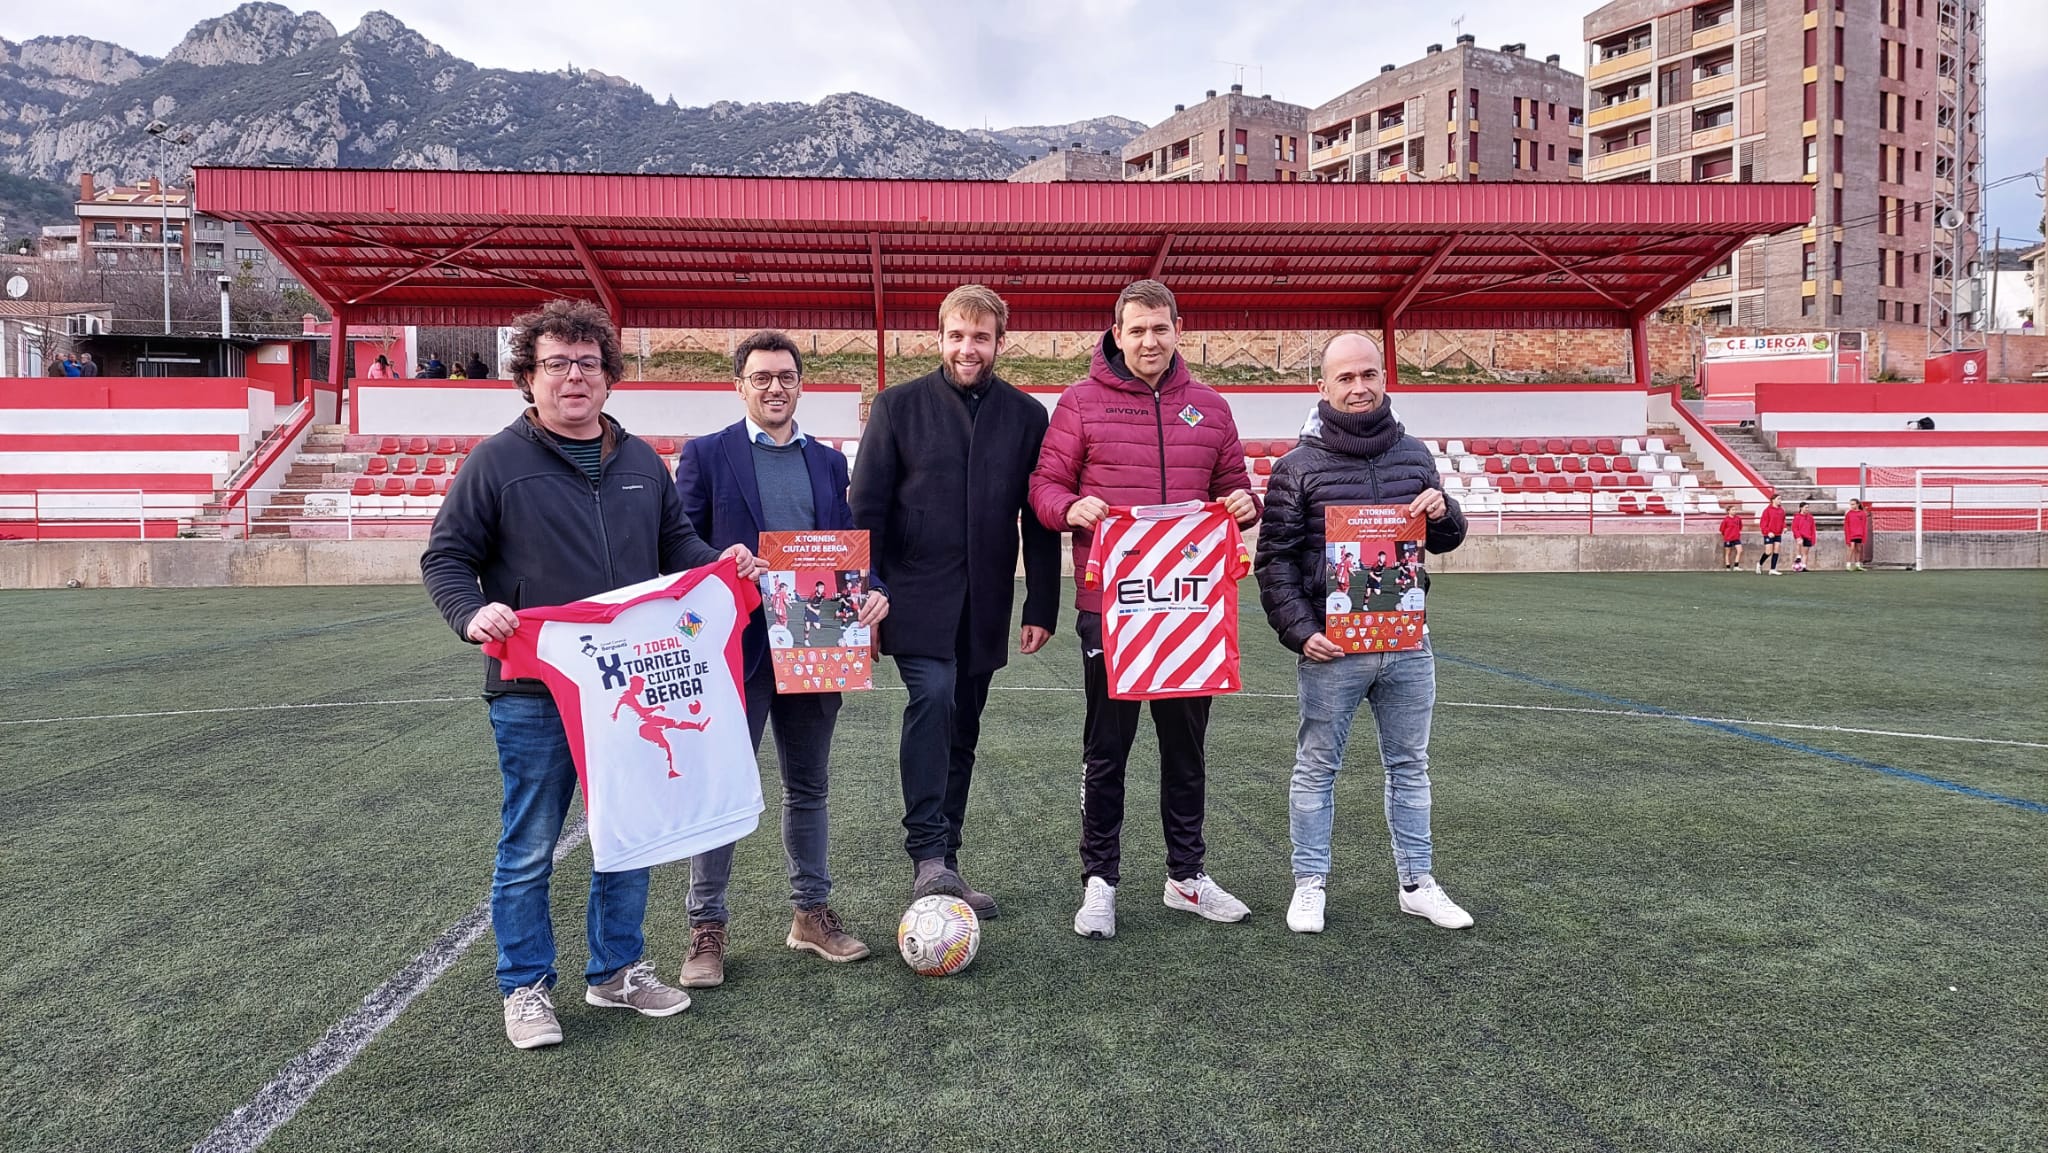 El X Torneig Ciutat de Berga reunirà una vintena d'equips benjamins de futbol durant la jornada de l'11 de febrer